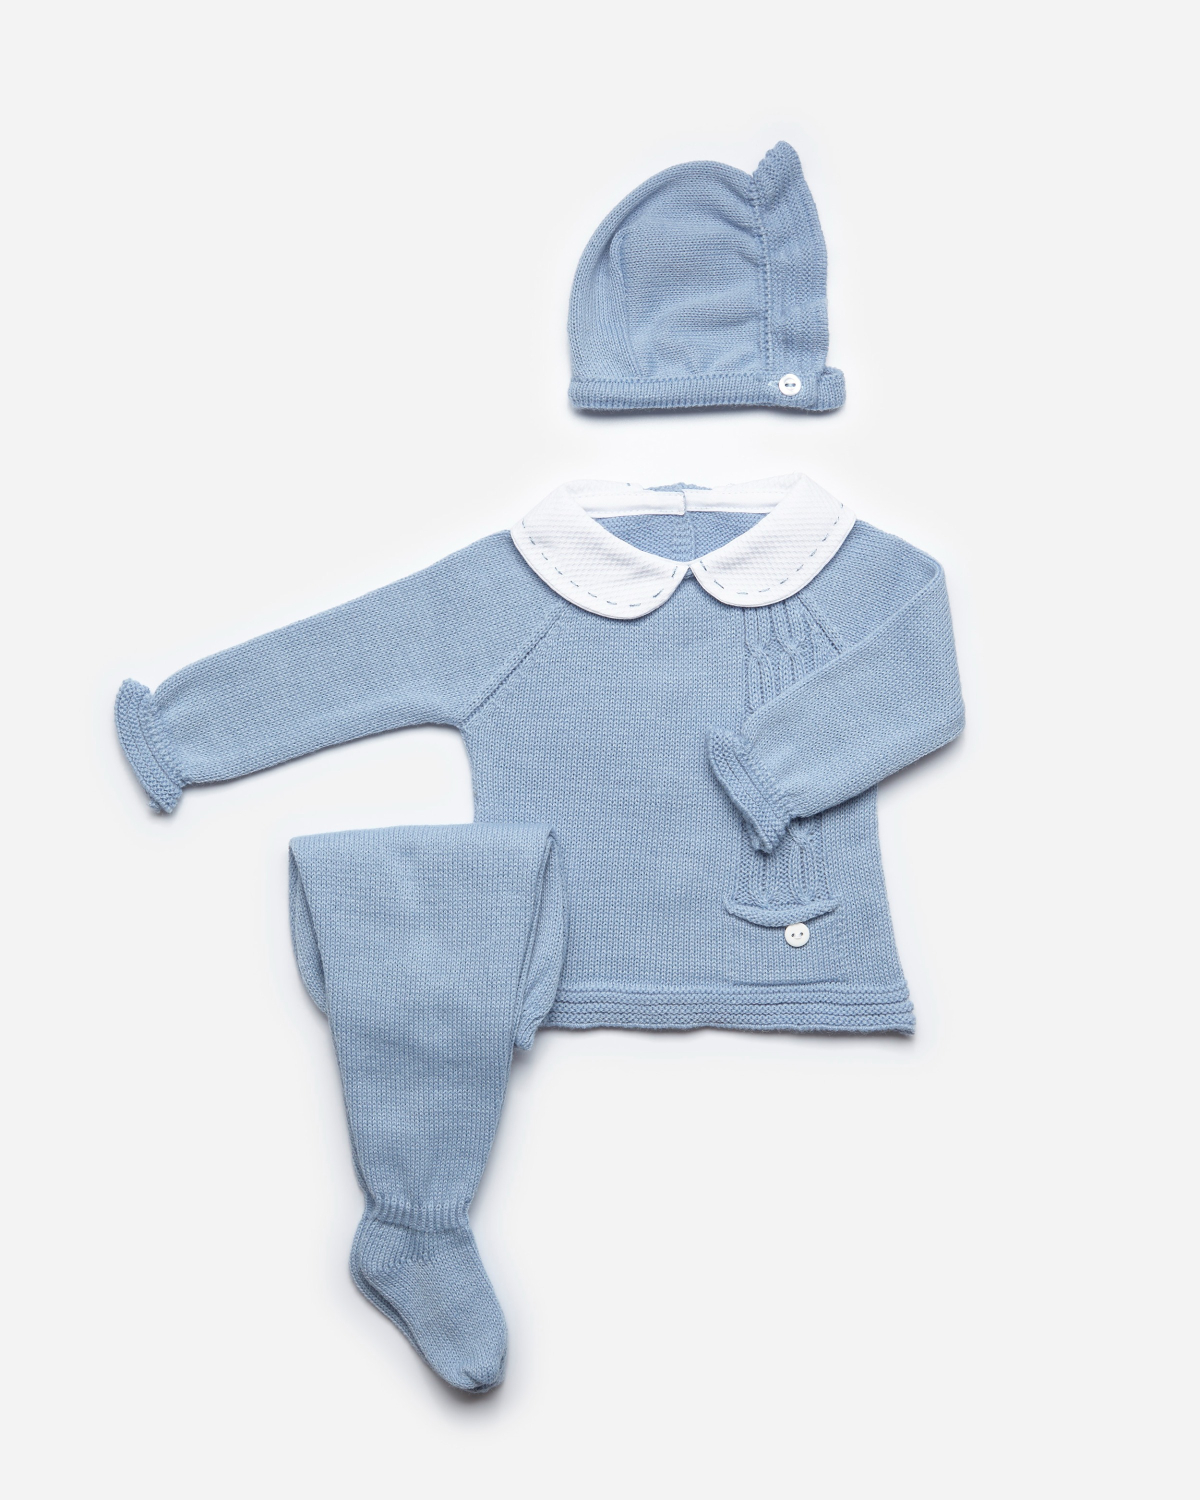 Blauw knit babypakje